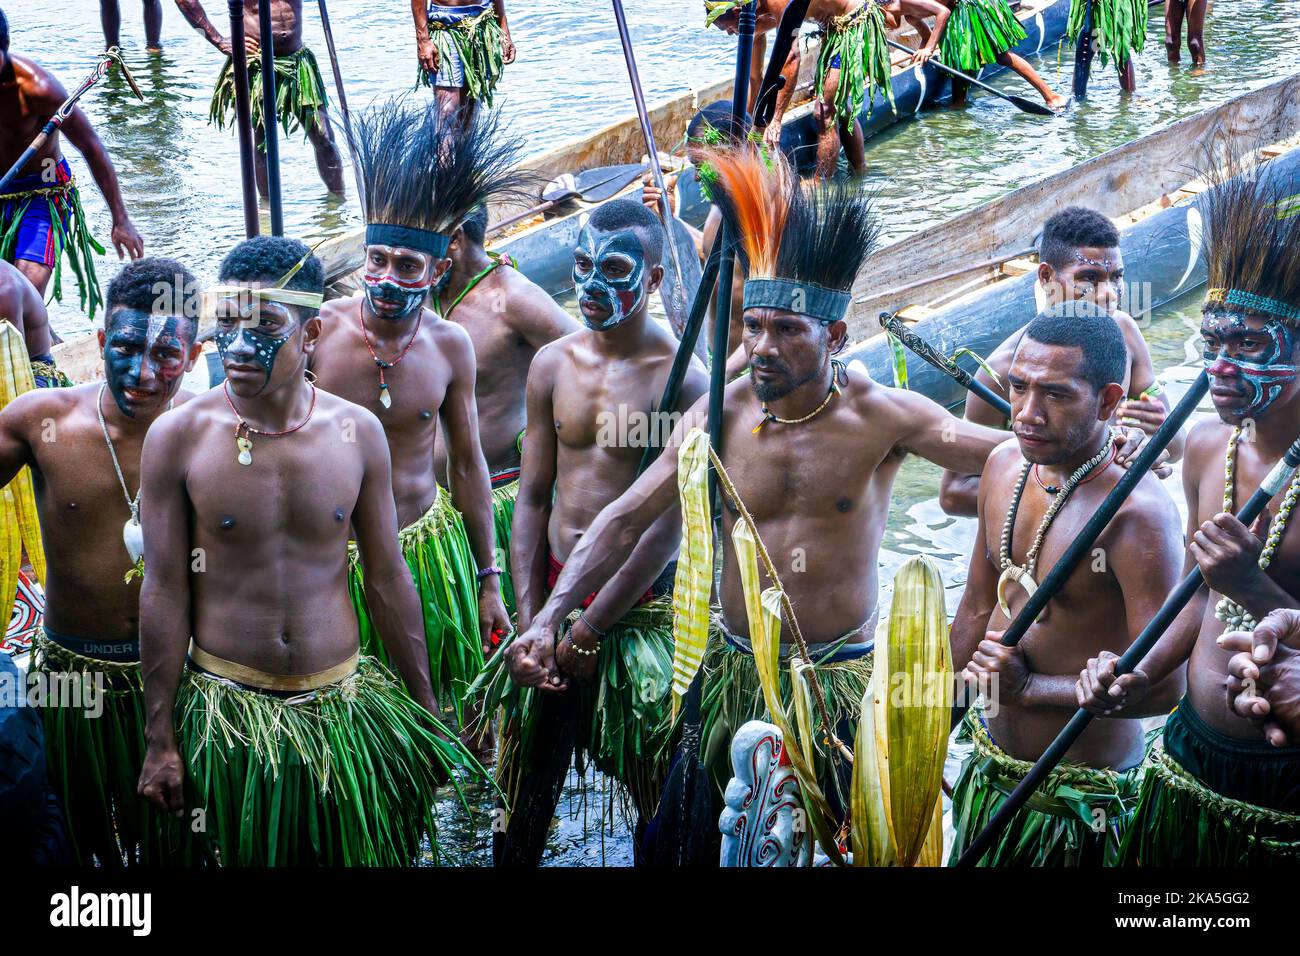 Pagaie indigene in costume tradizionale che mostrano canoe da sgabuzzi, Festival culturale Alotau, Provincia di Milne Bay, Papua Nuova Guinea Foto Stock